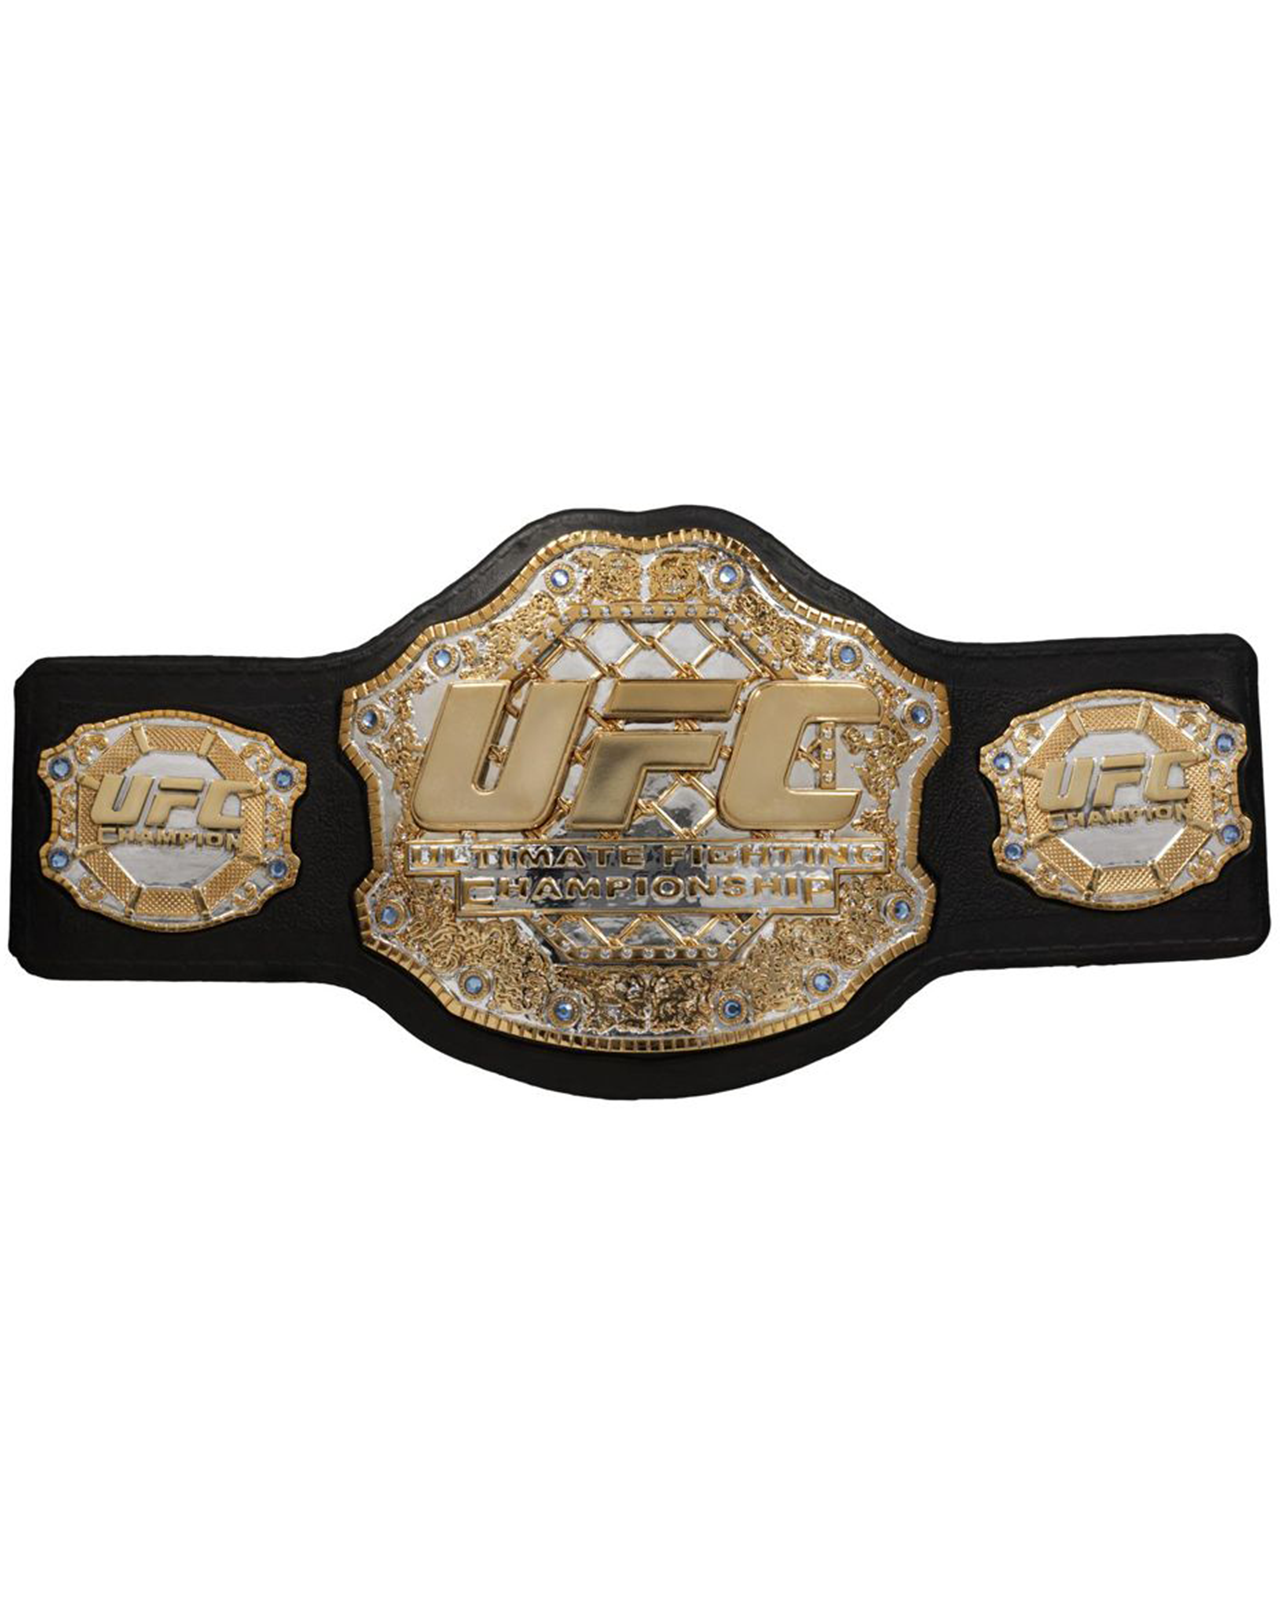 UFC Ultimate Fighting Championship Wrestling Belt Adult Size 